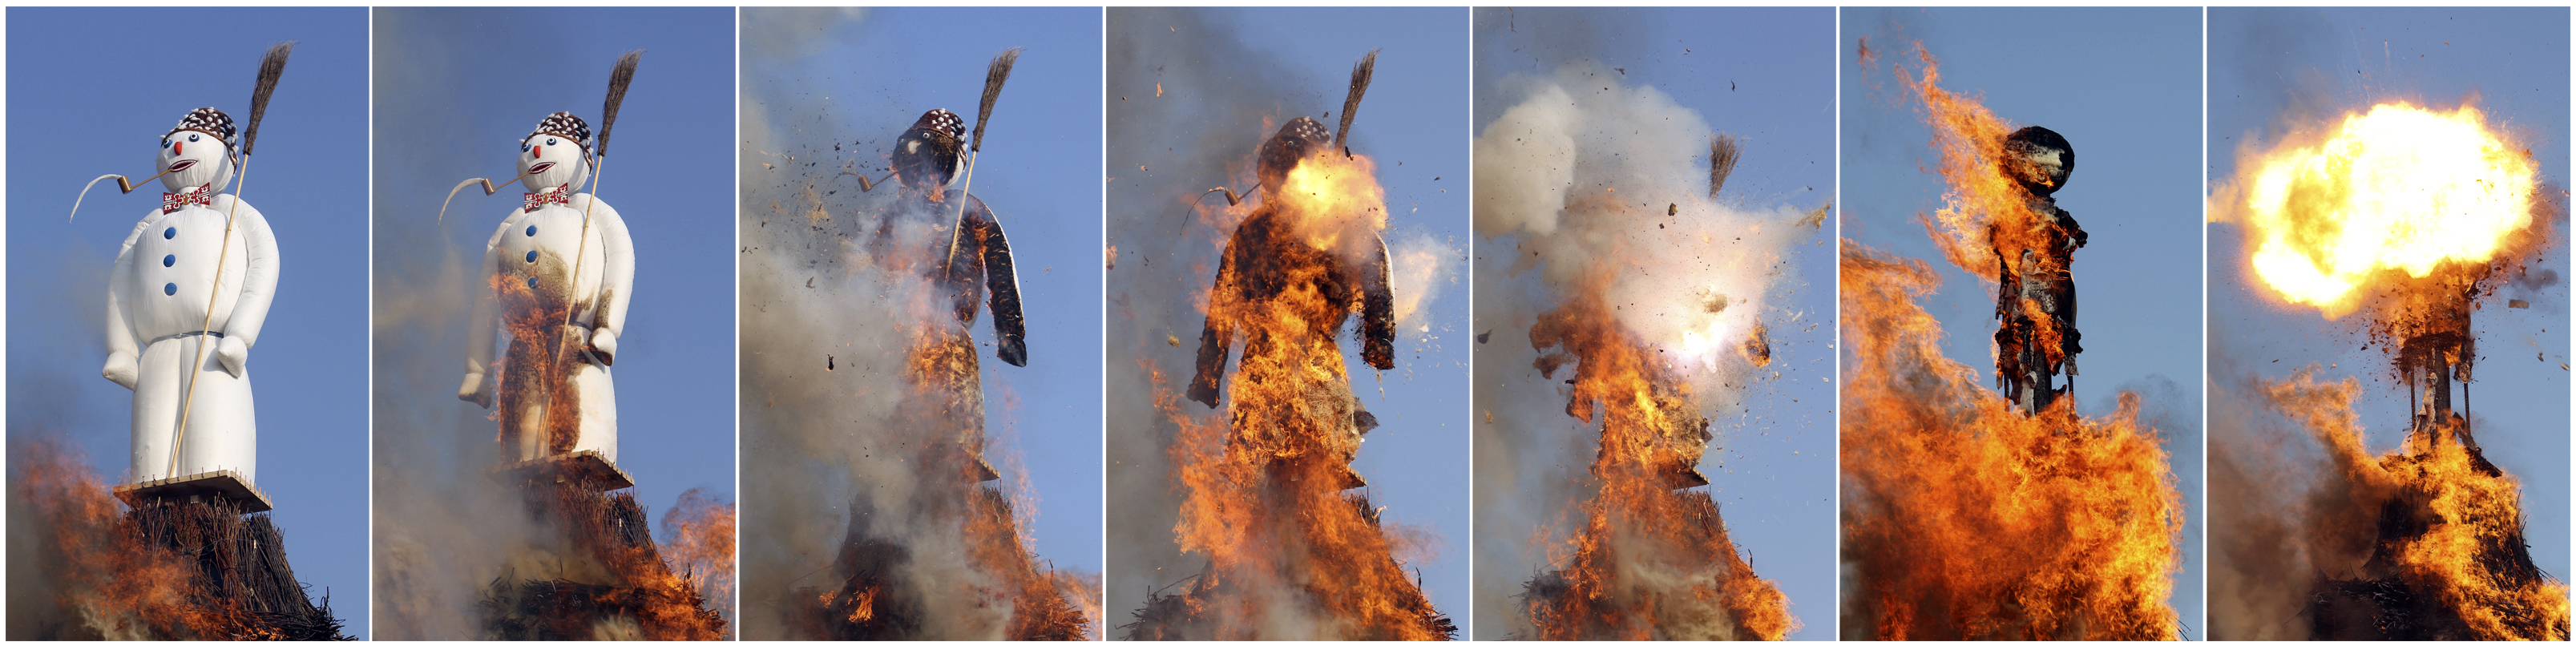 مجسم رجل ثلجي يحترق